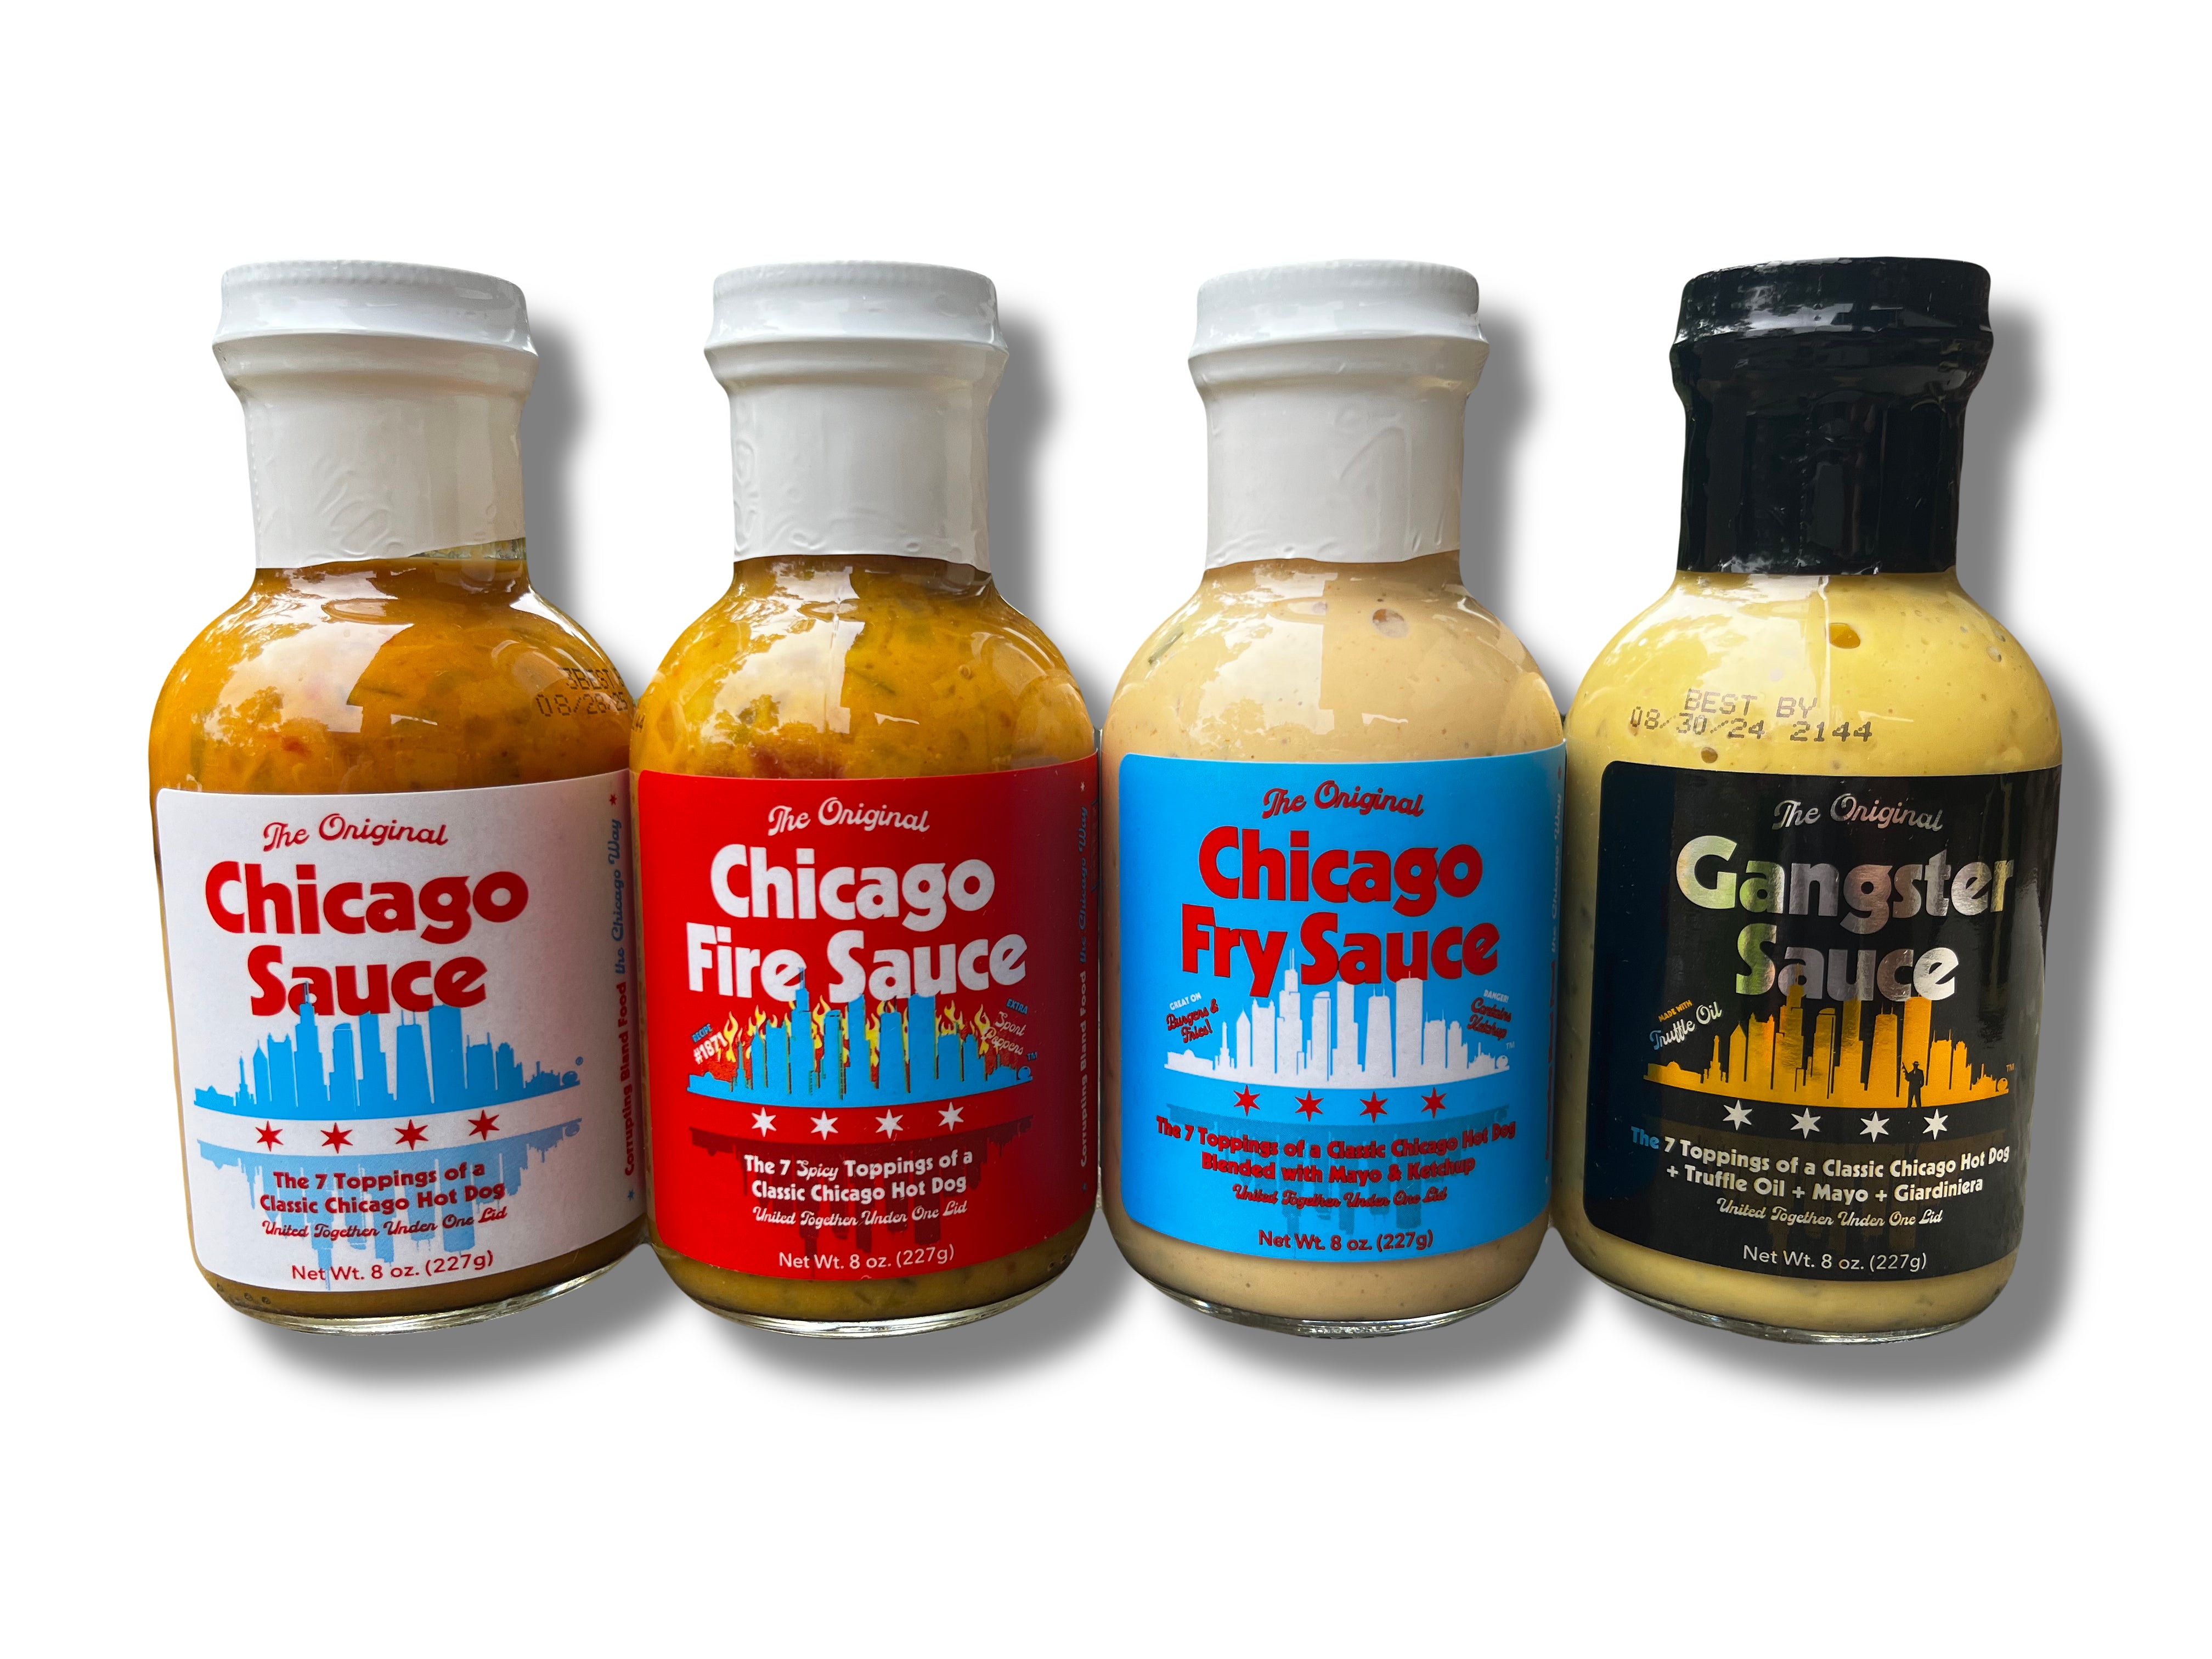 Chicago Mild Sauce Recipe